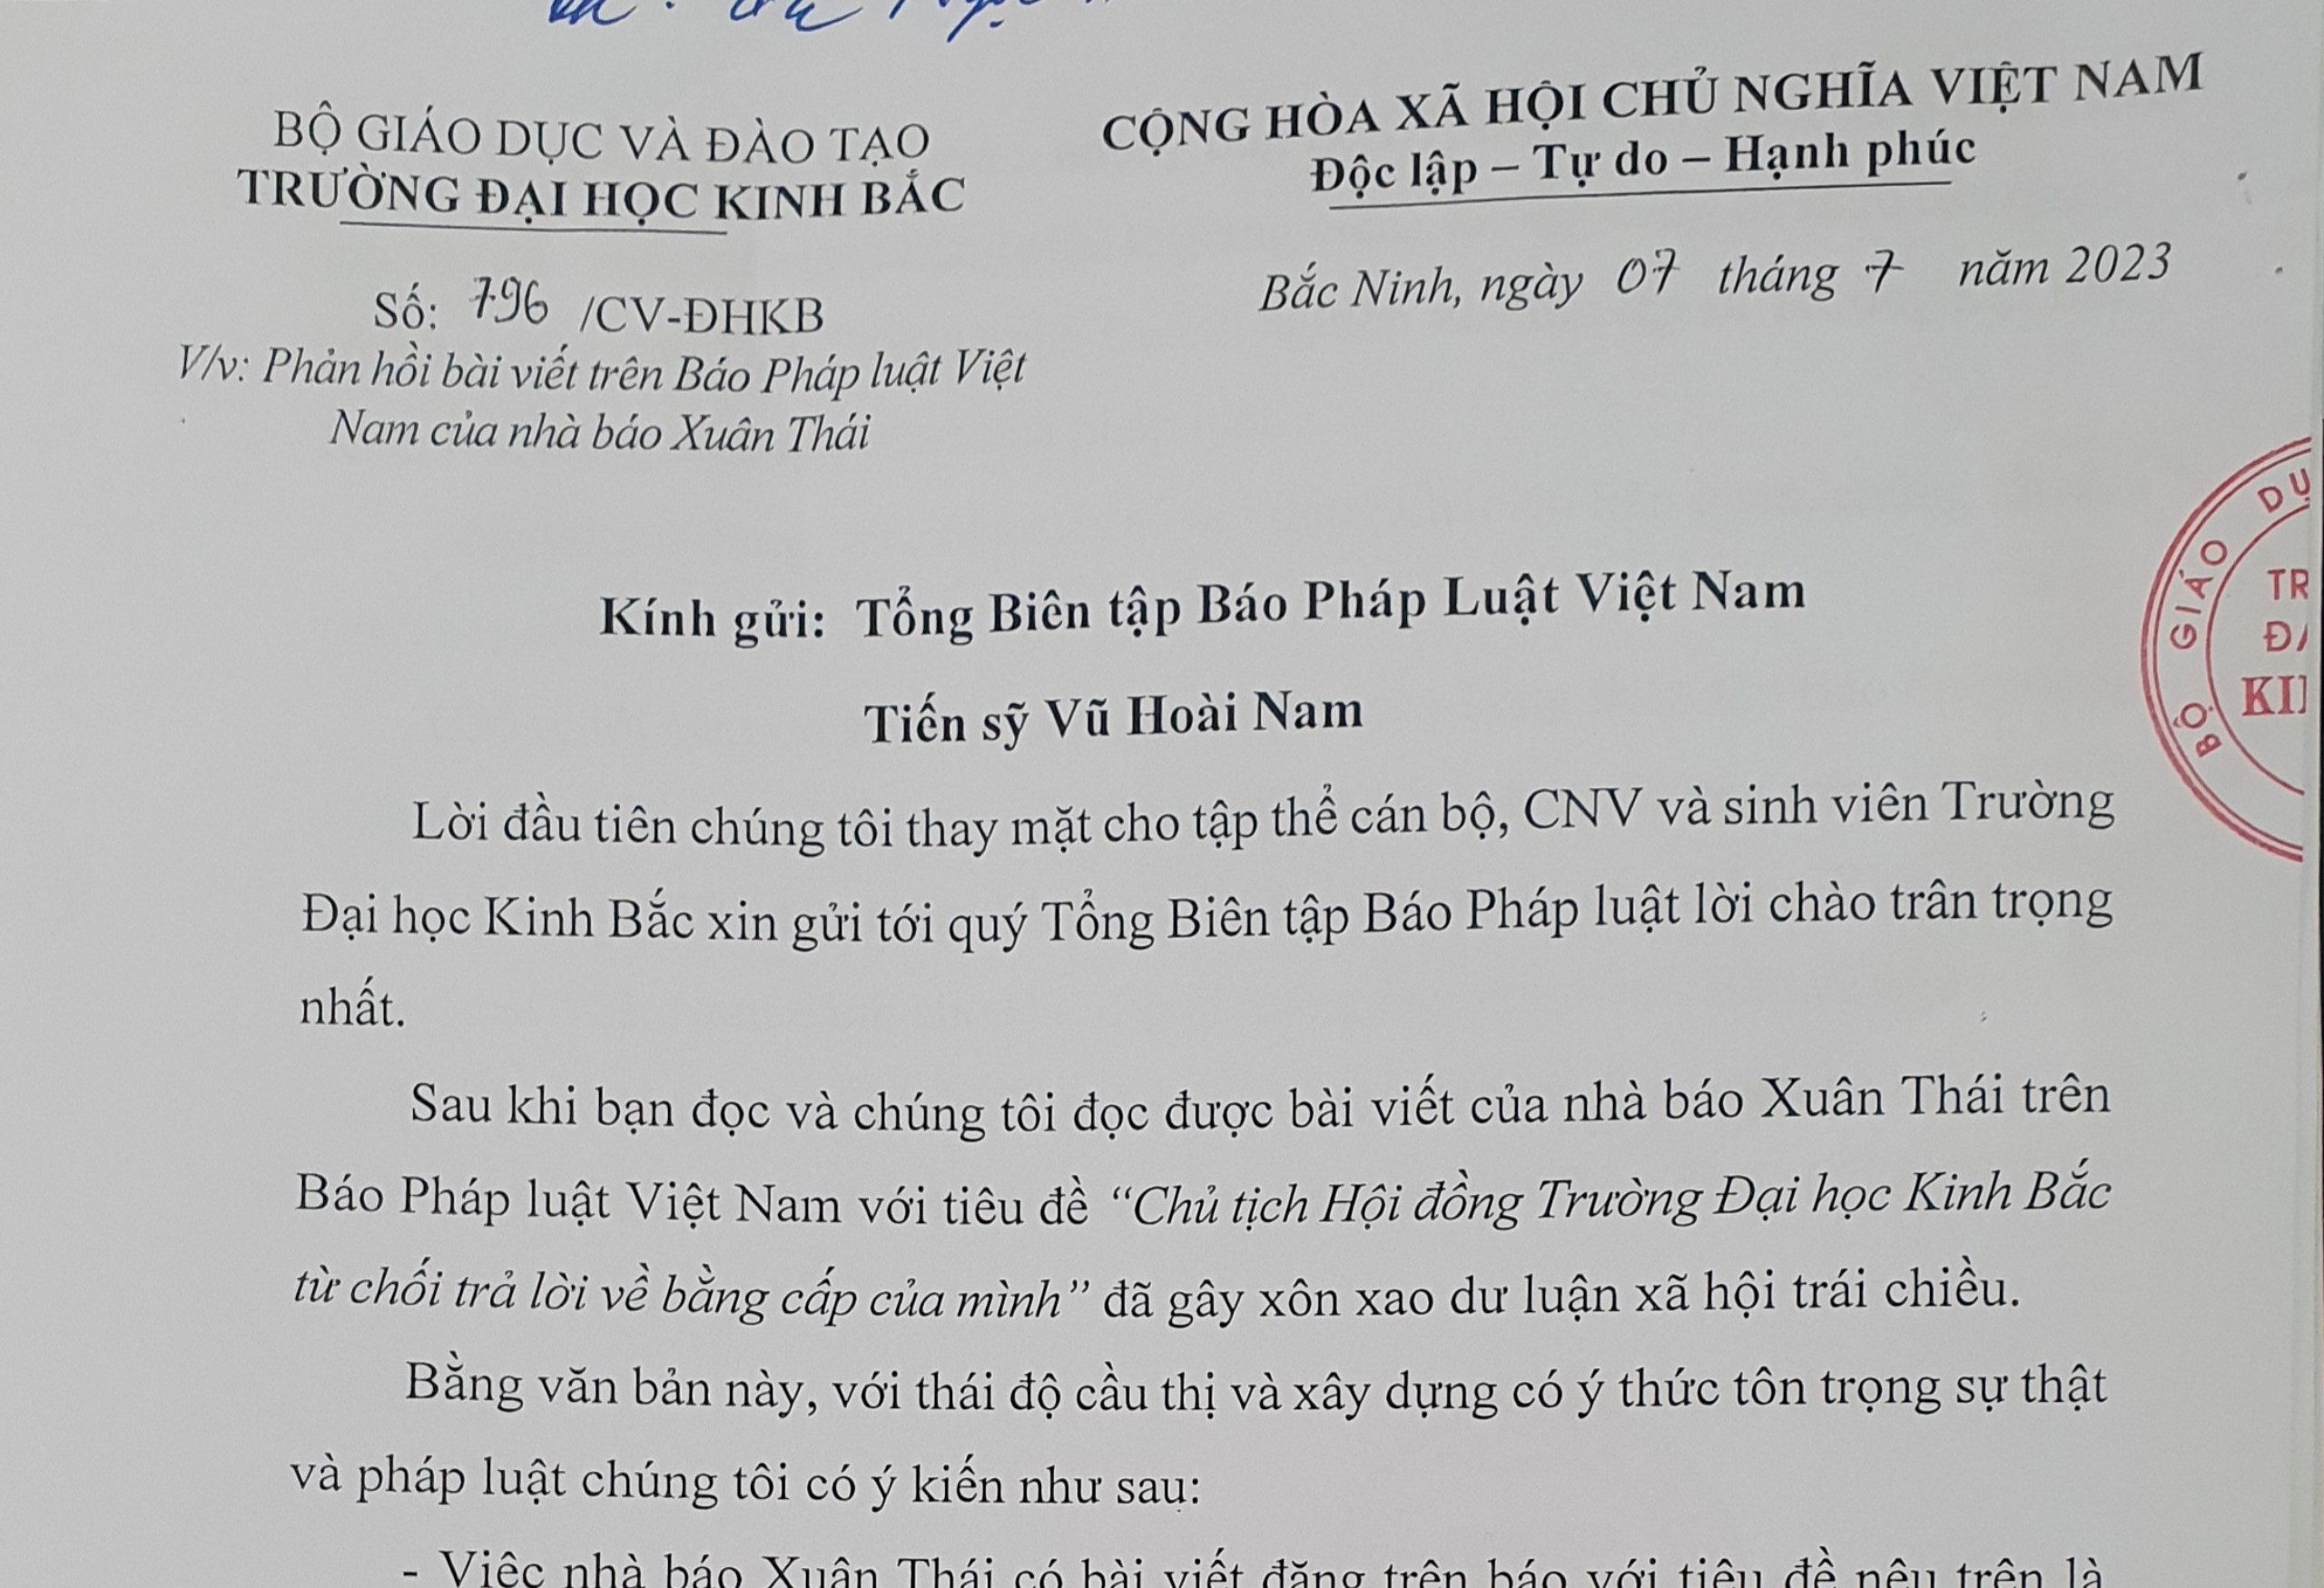 Văn bản phàn hồi của trường Đại học Kinh Bắc gửi tới báo Pháp luật Việt Nam.